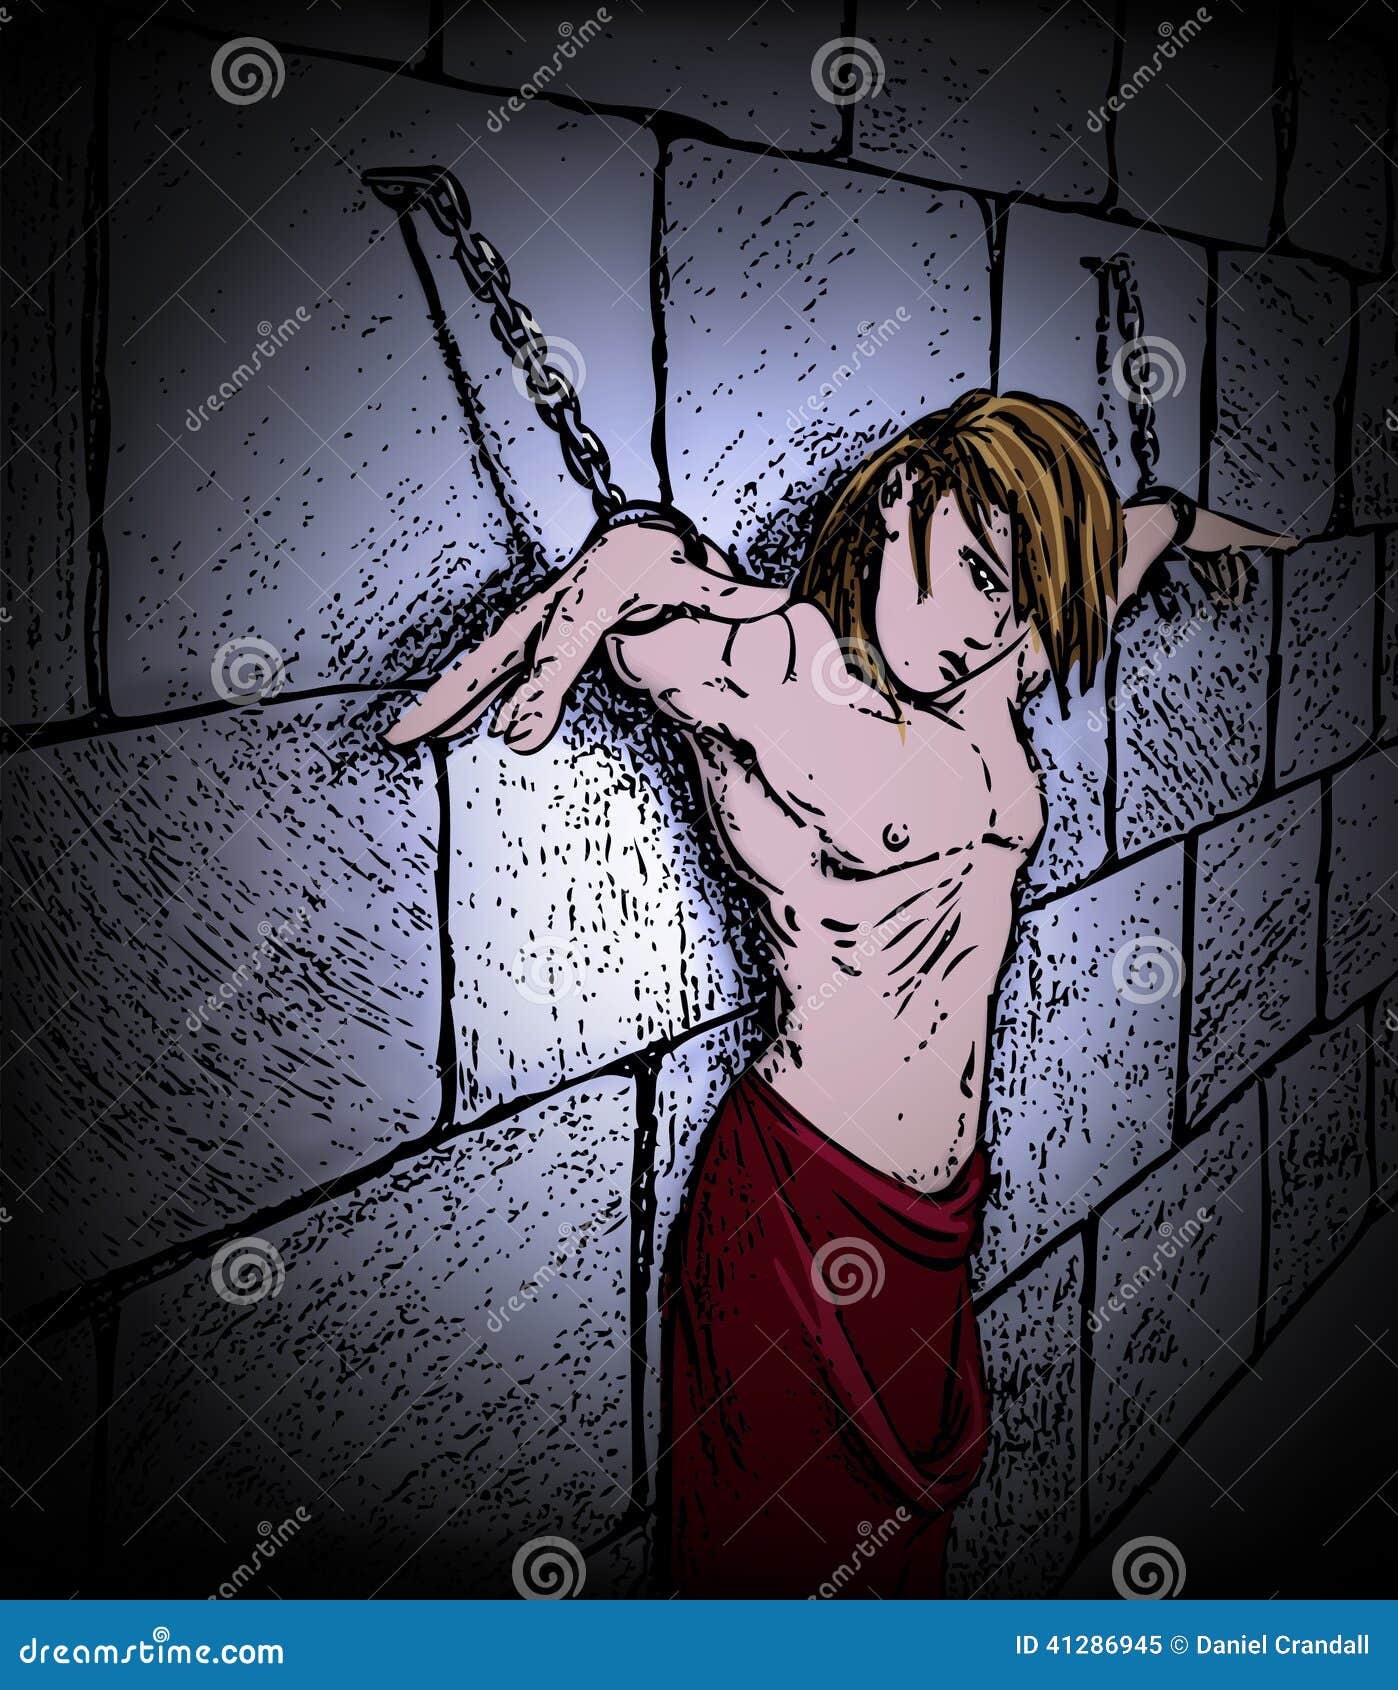 Image result for prisoner hanging in dungeon